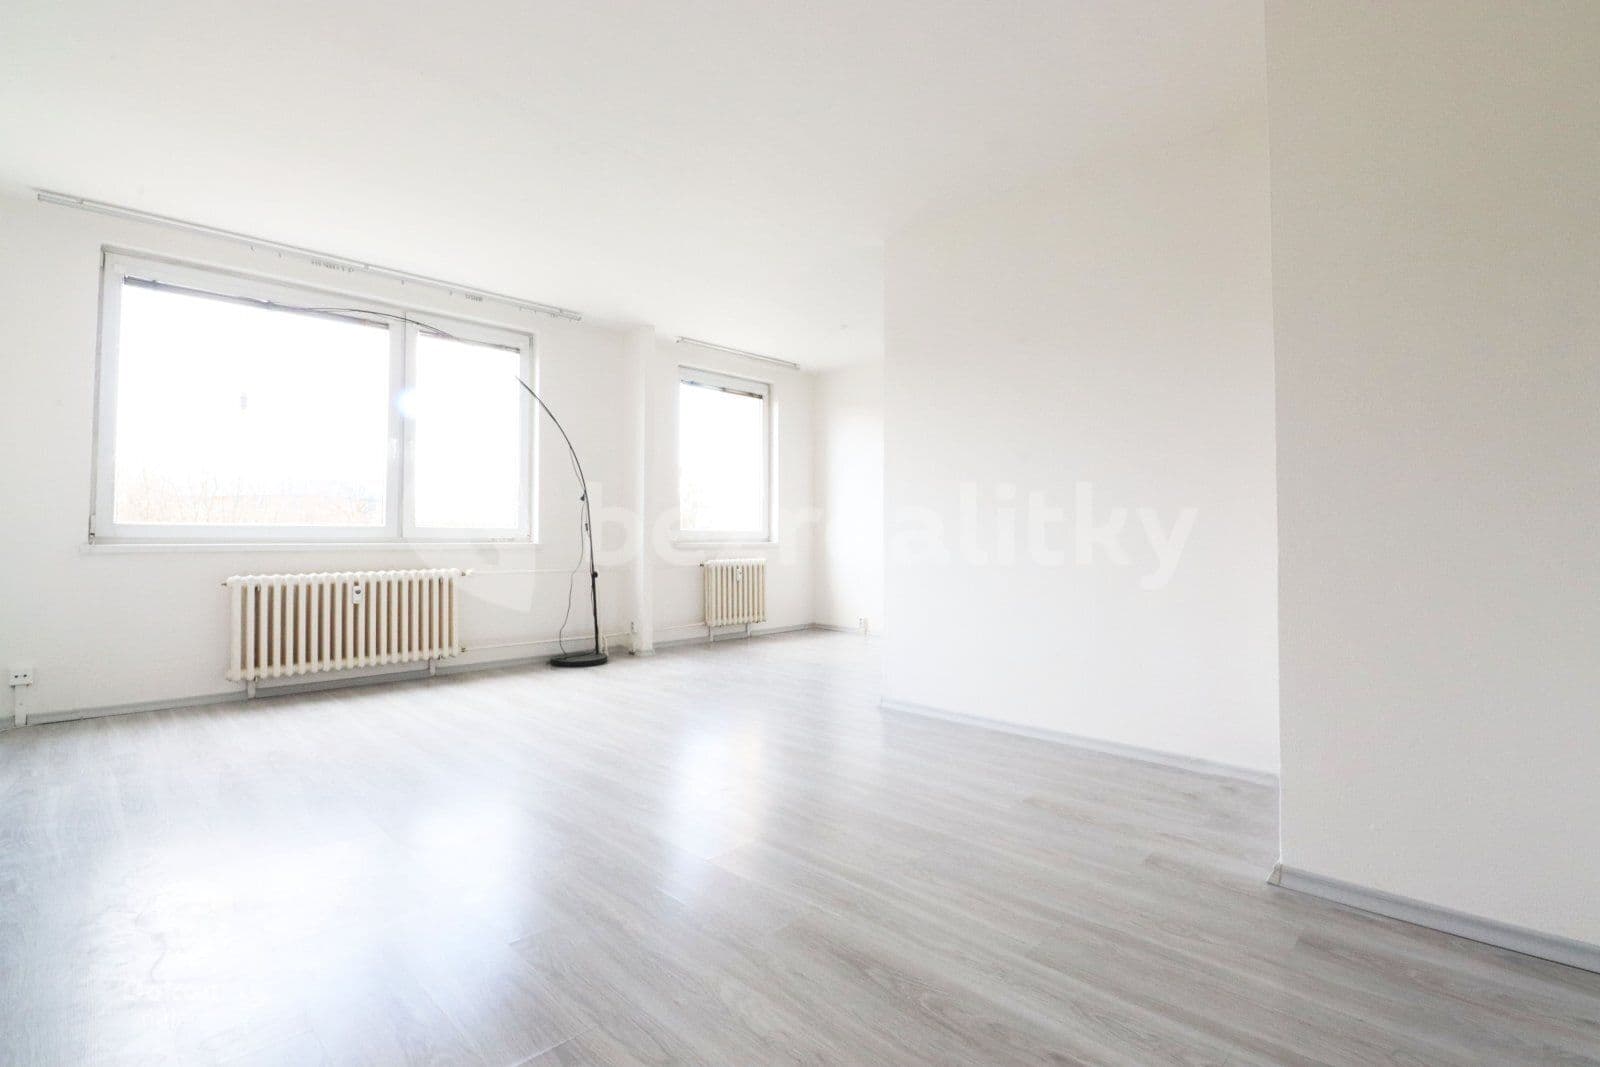 3 bedroom flat to rent, 71 m², Družstevní, Bystřice, Středočeský Region